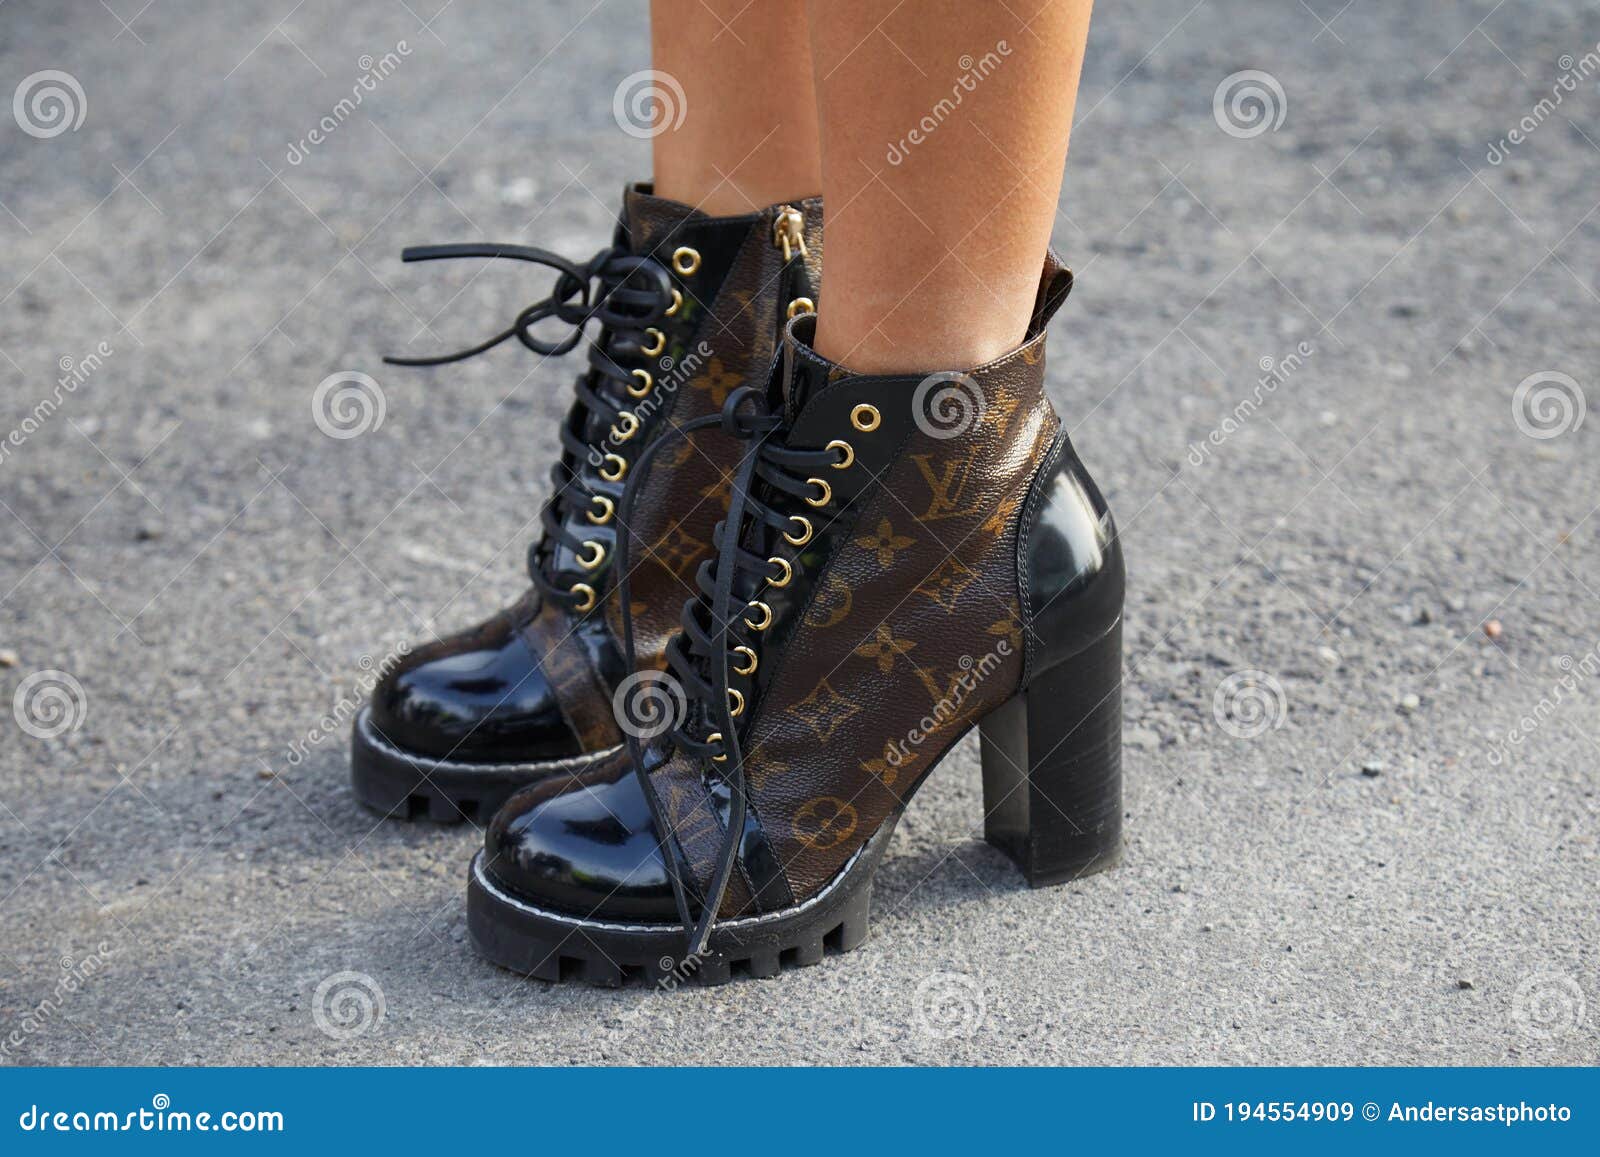 vuitton horse leg heels